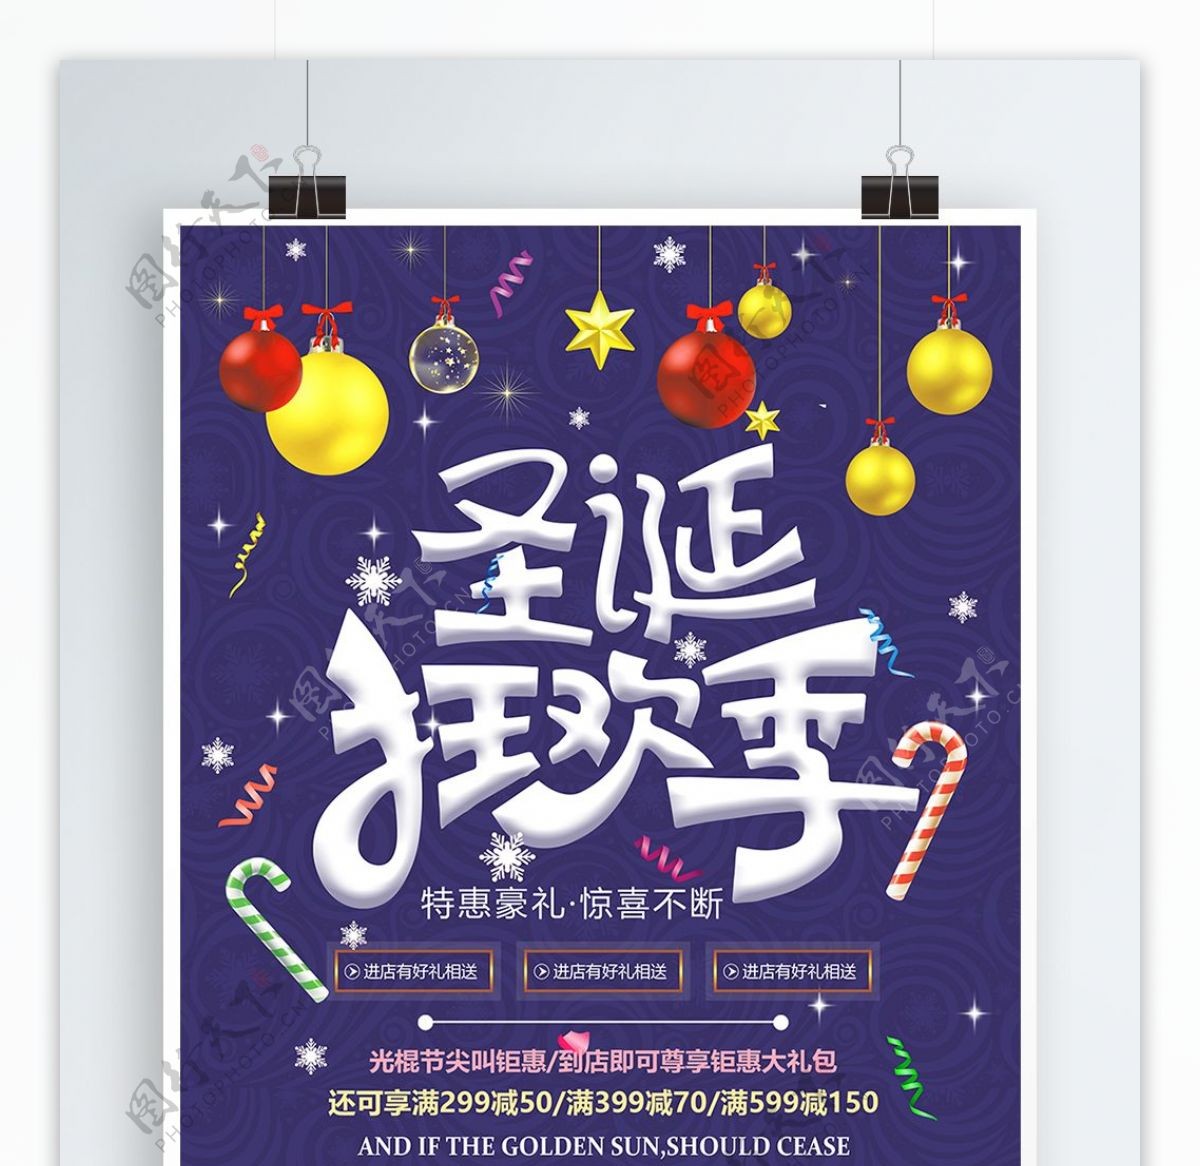 紫蓝色圣诞狂欢季活动促销宣传海报设计